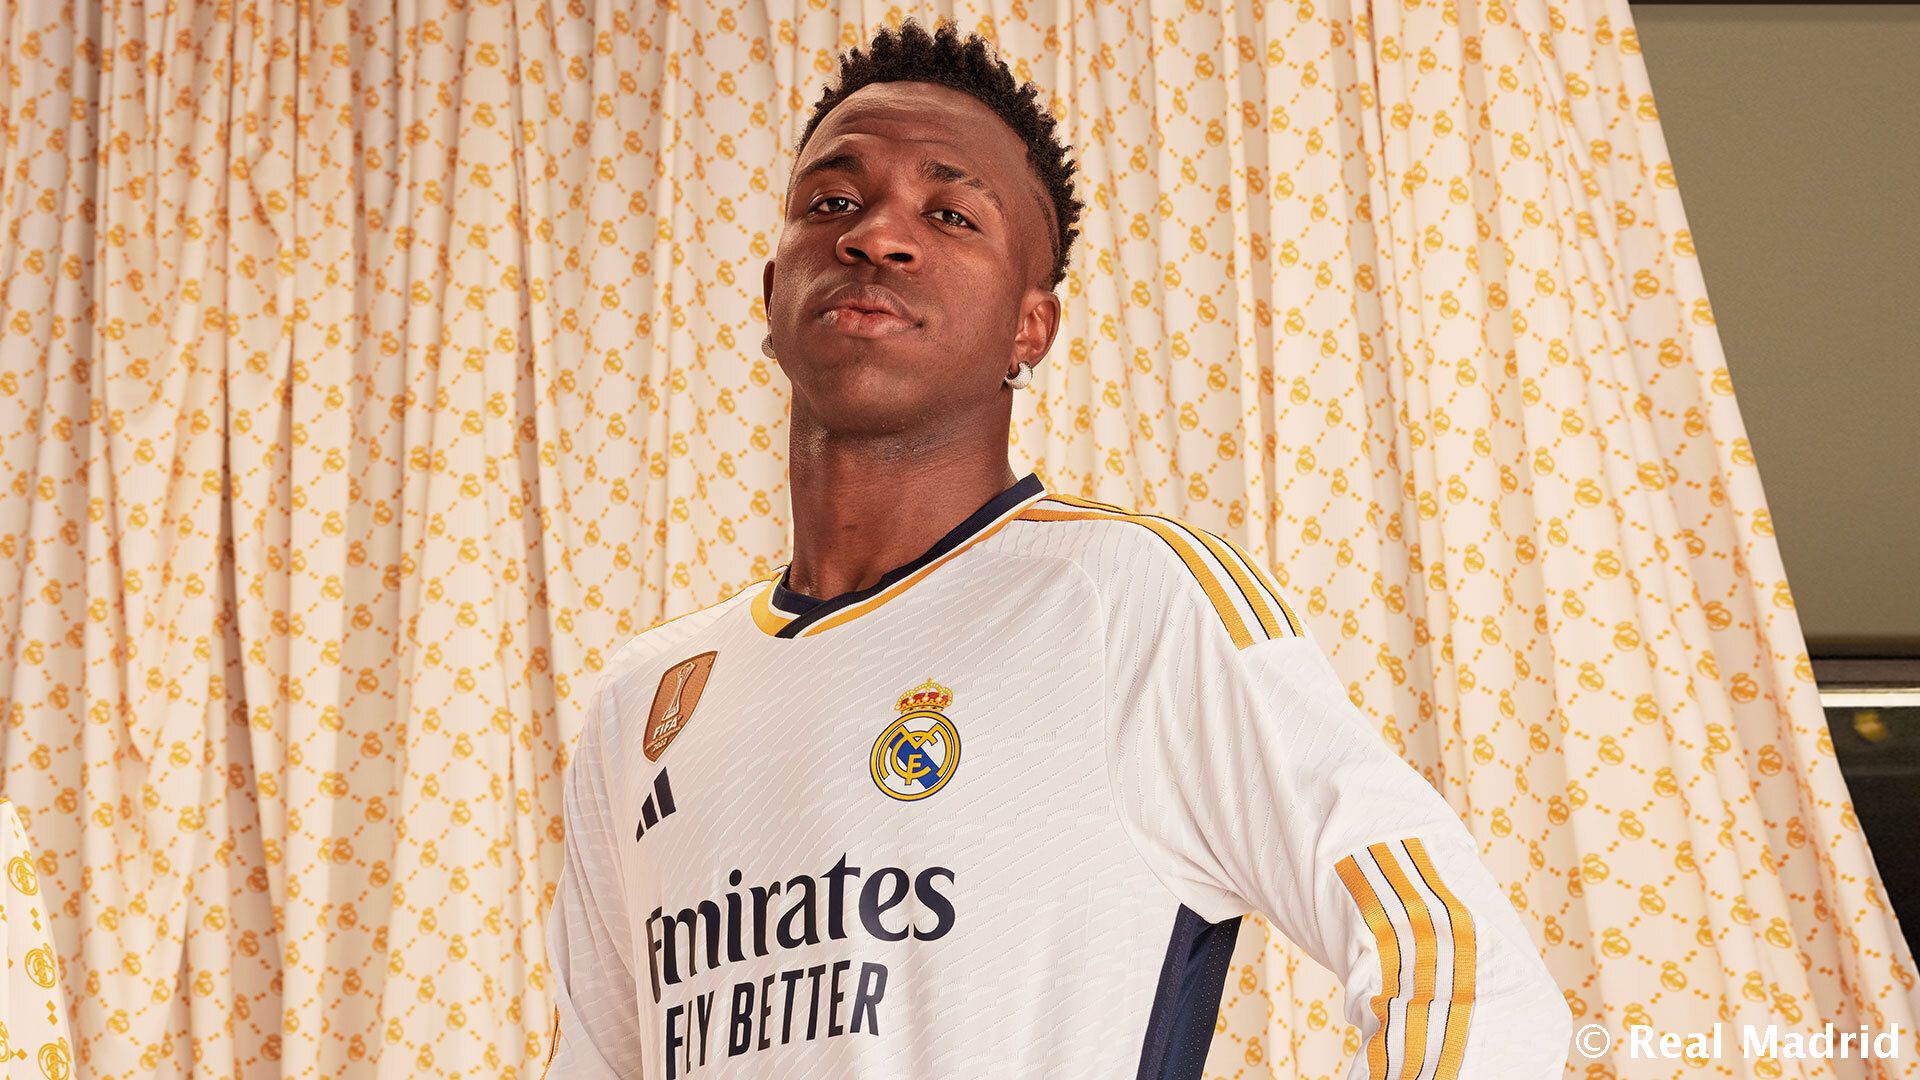 El Real Madrid suma una nueva camiseta a su colección - Notas de Fútbol